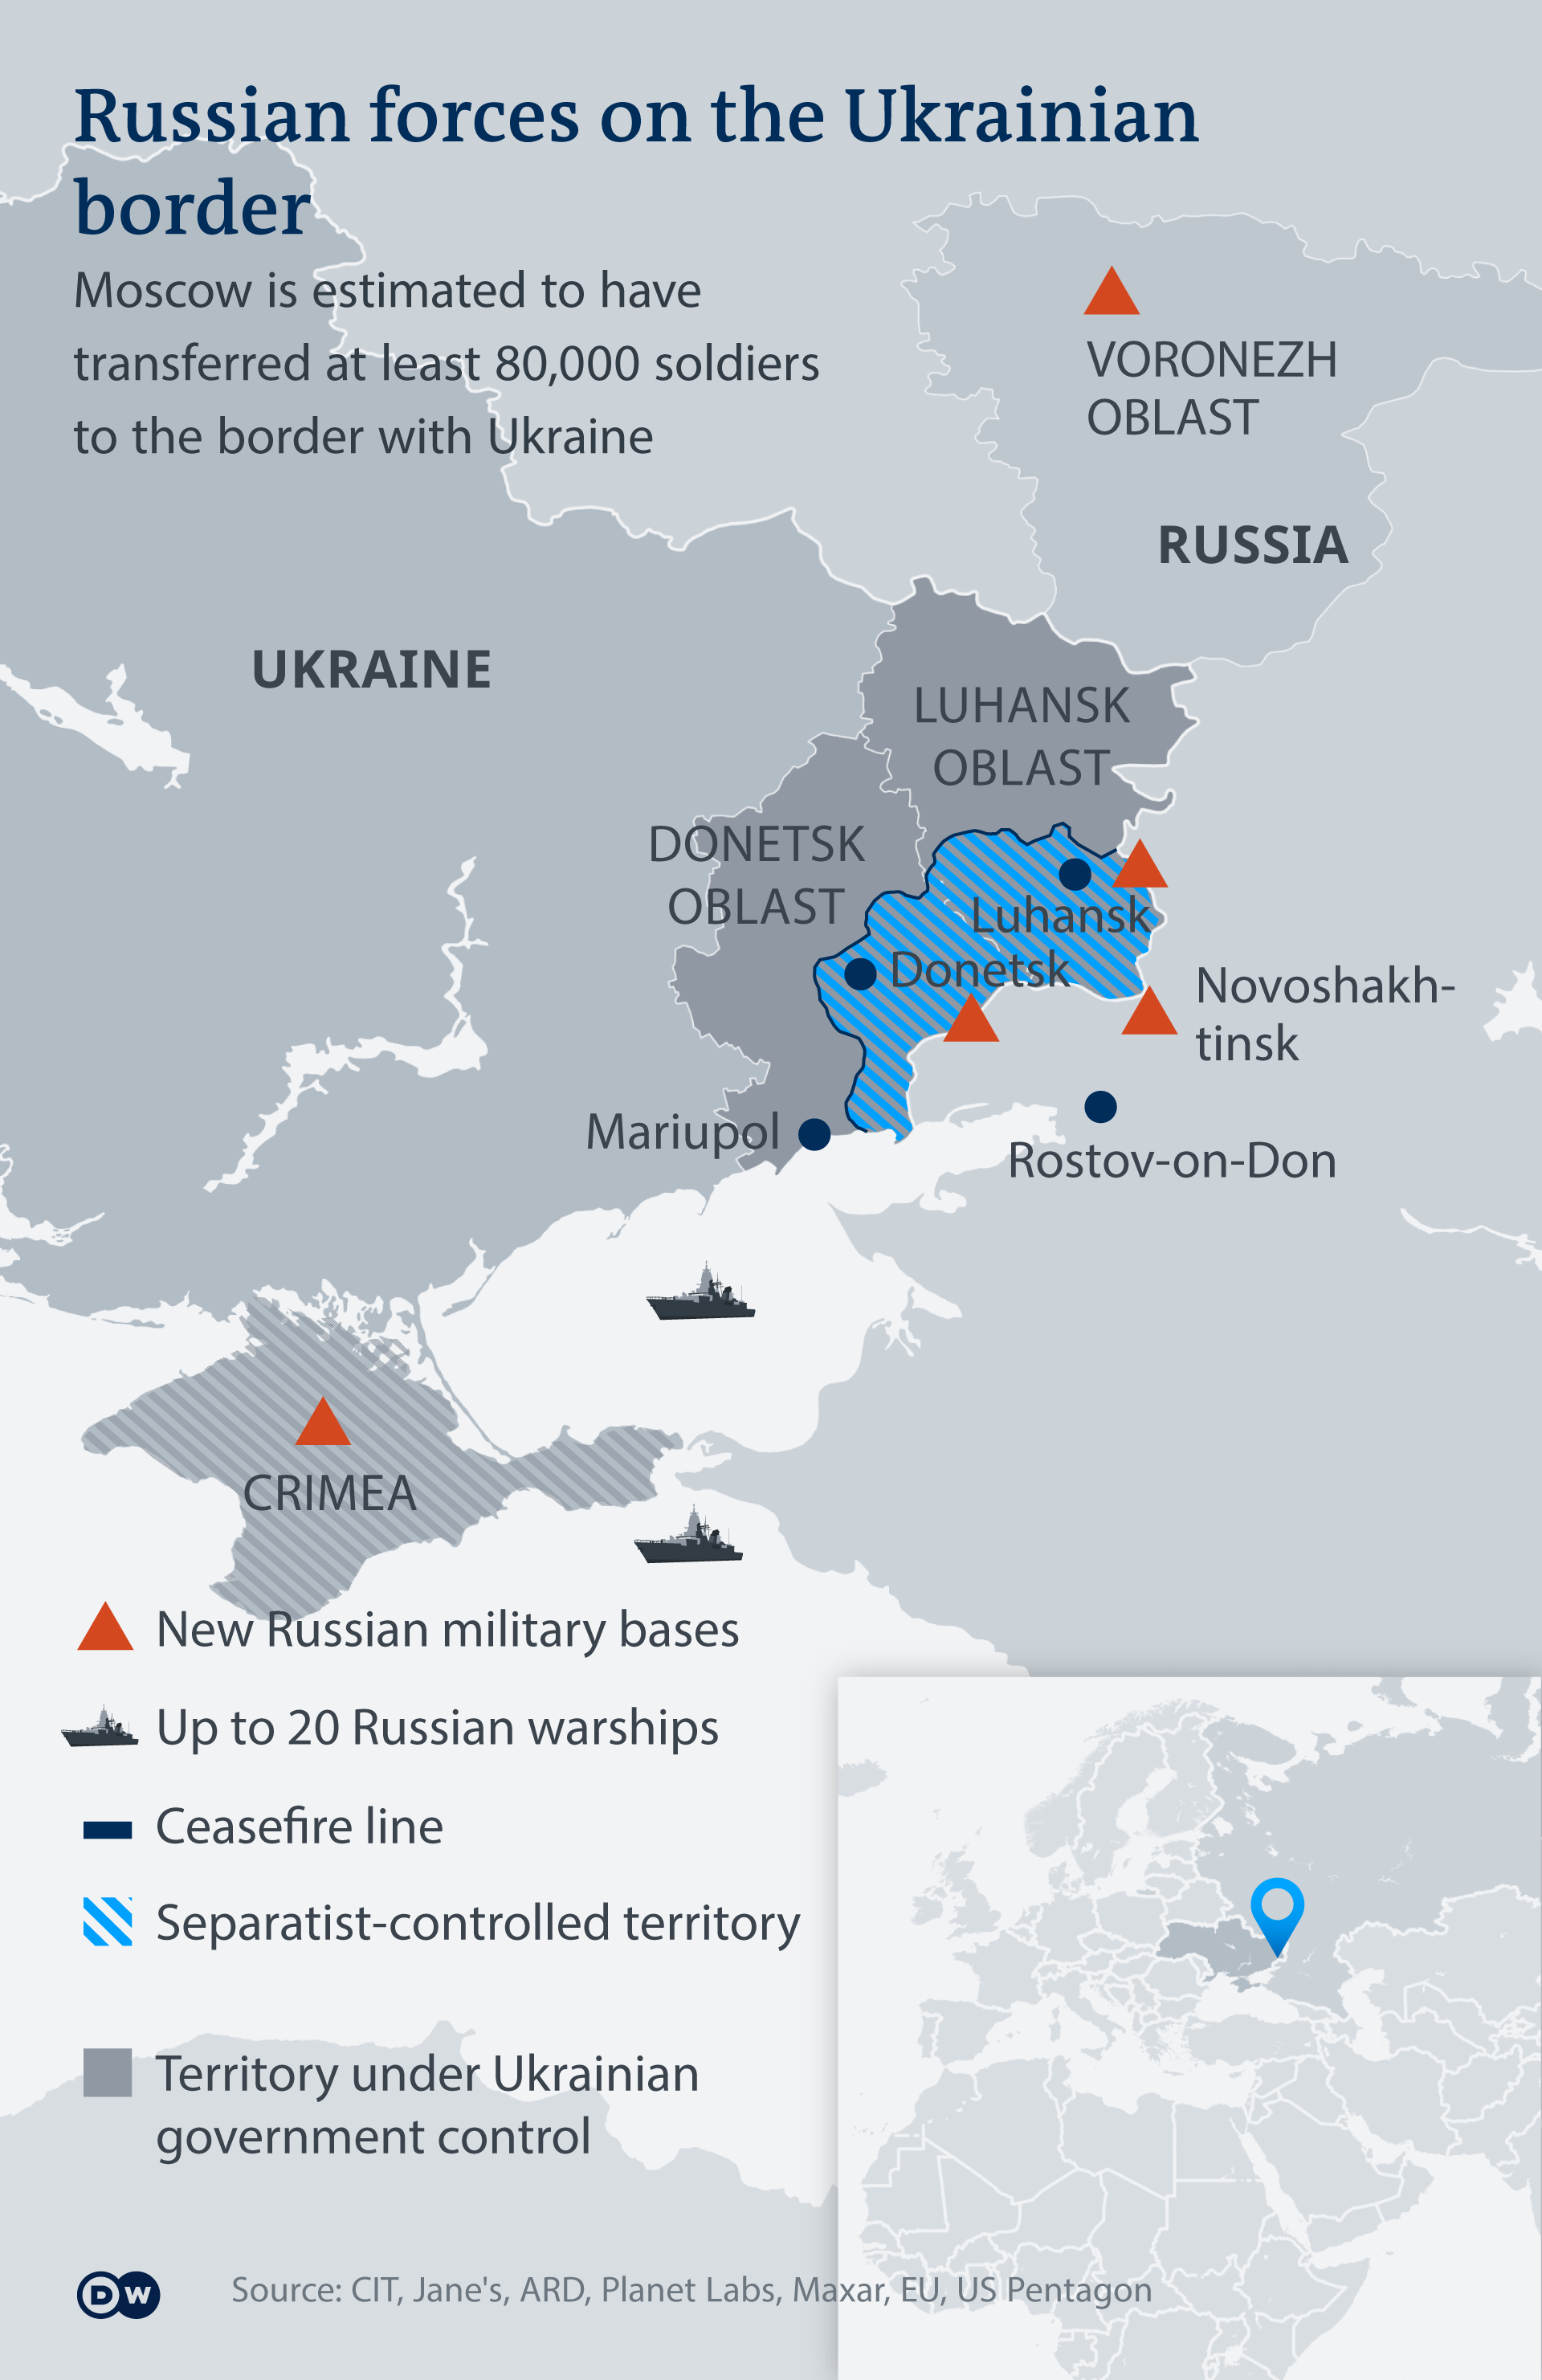 Russia-ukraine conflict summary 2020